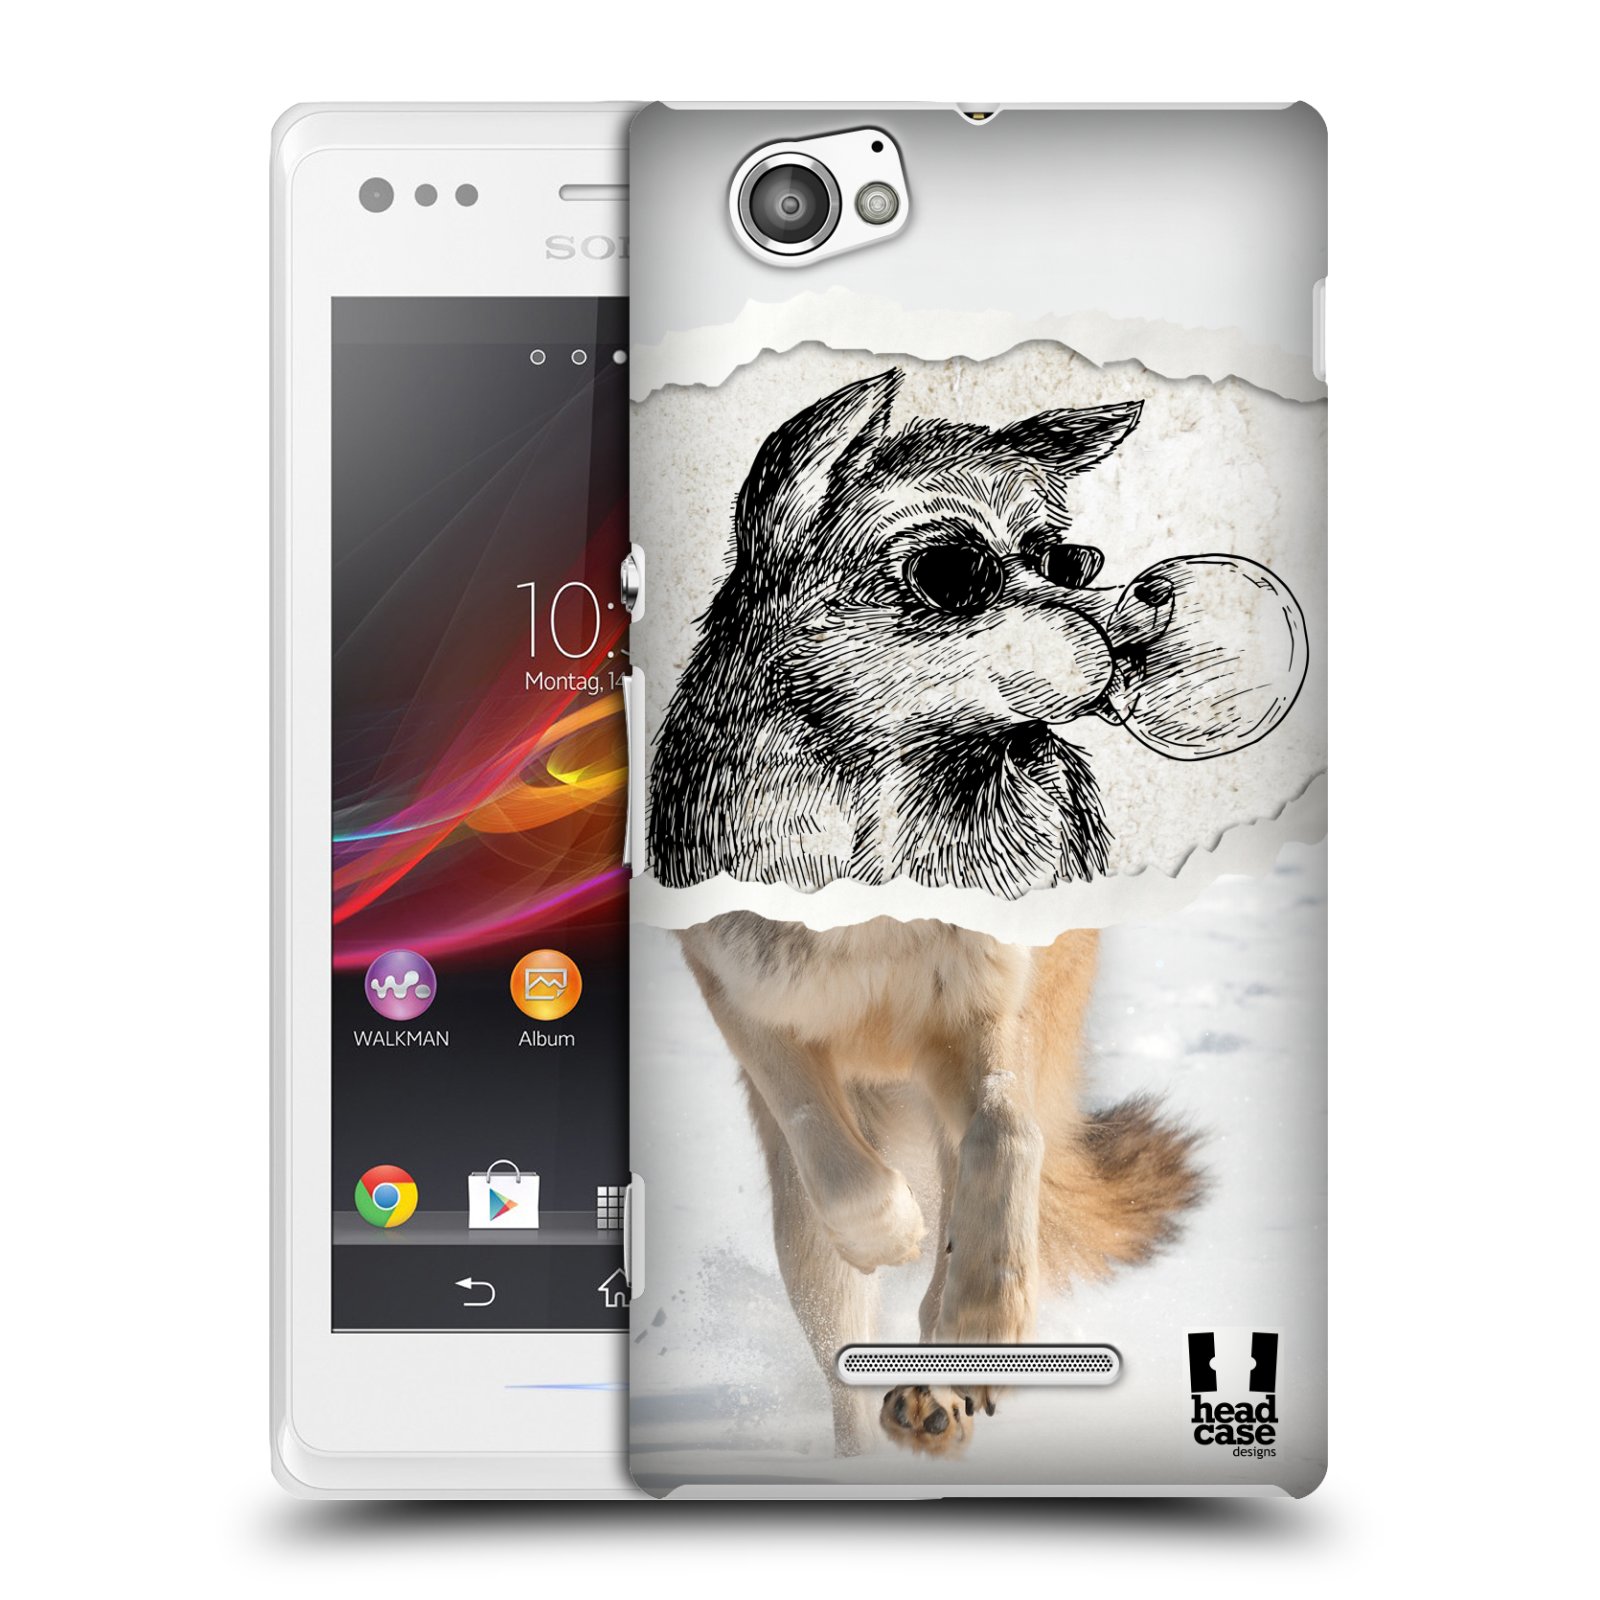 HEAD CASE plastový obal na mobil Sony Xperia M vzor zvířata koláž vlk pohodář